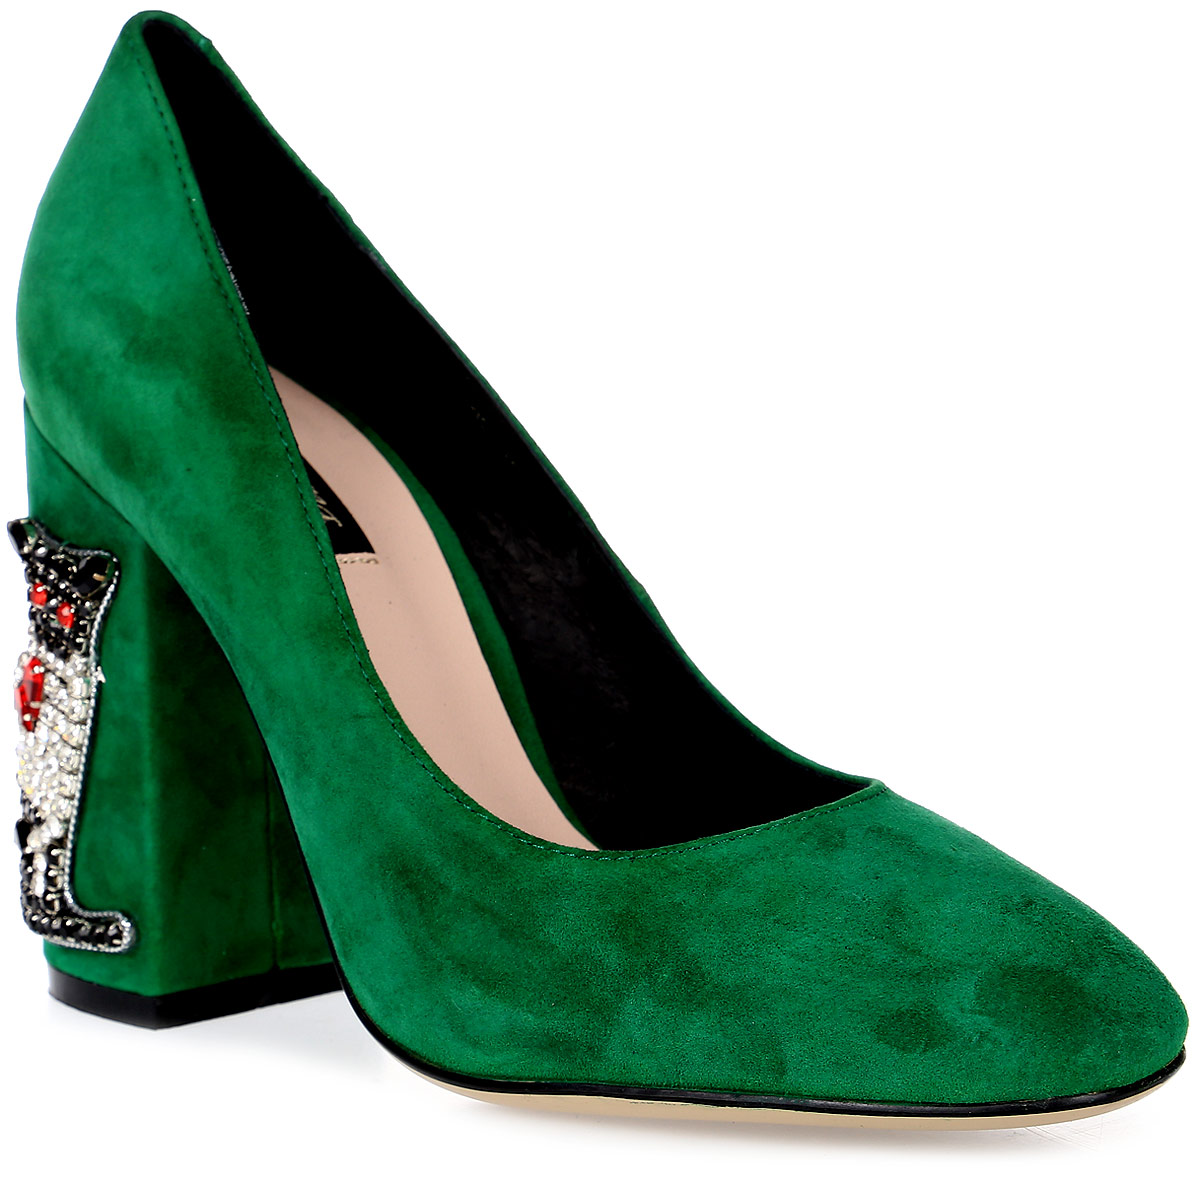 Туфли женские Graciana, цвет: зеленый. A7927D-J01-3. Размер 39